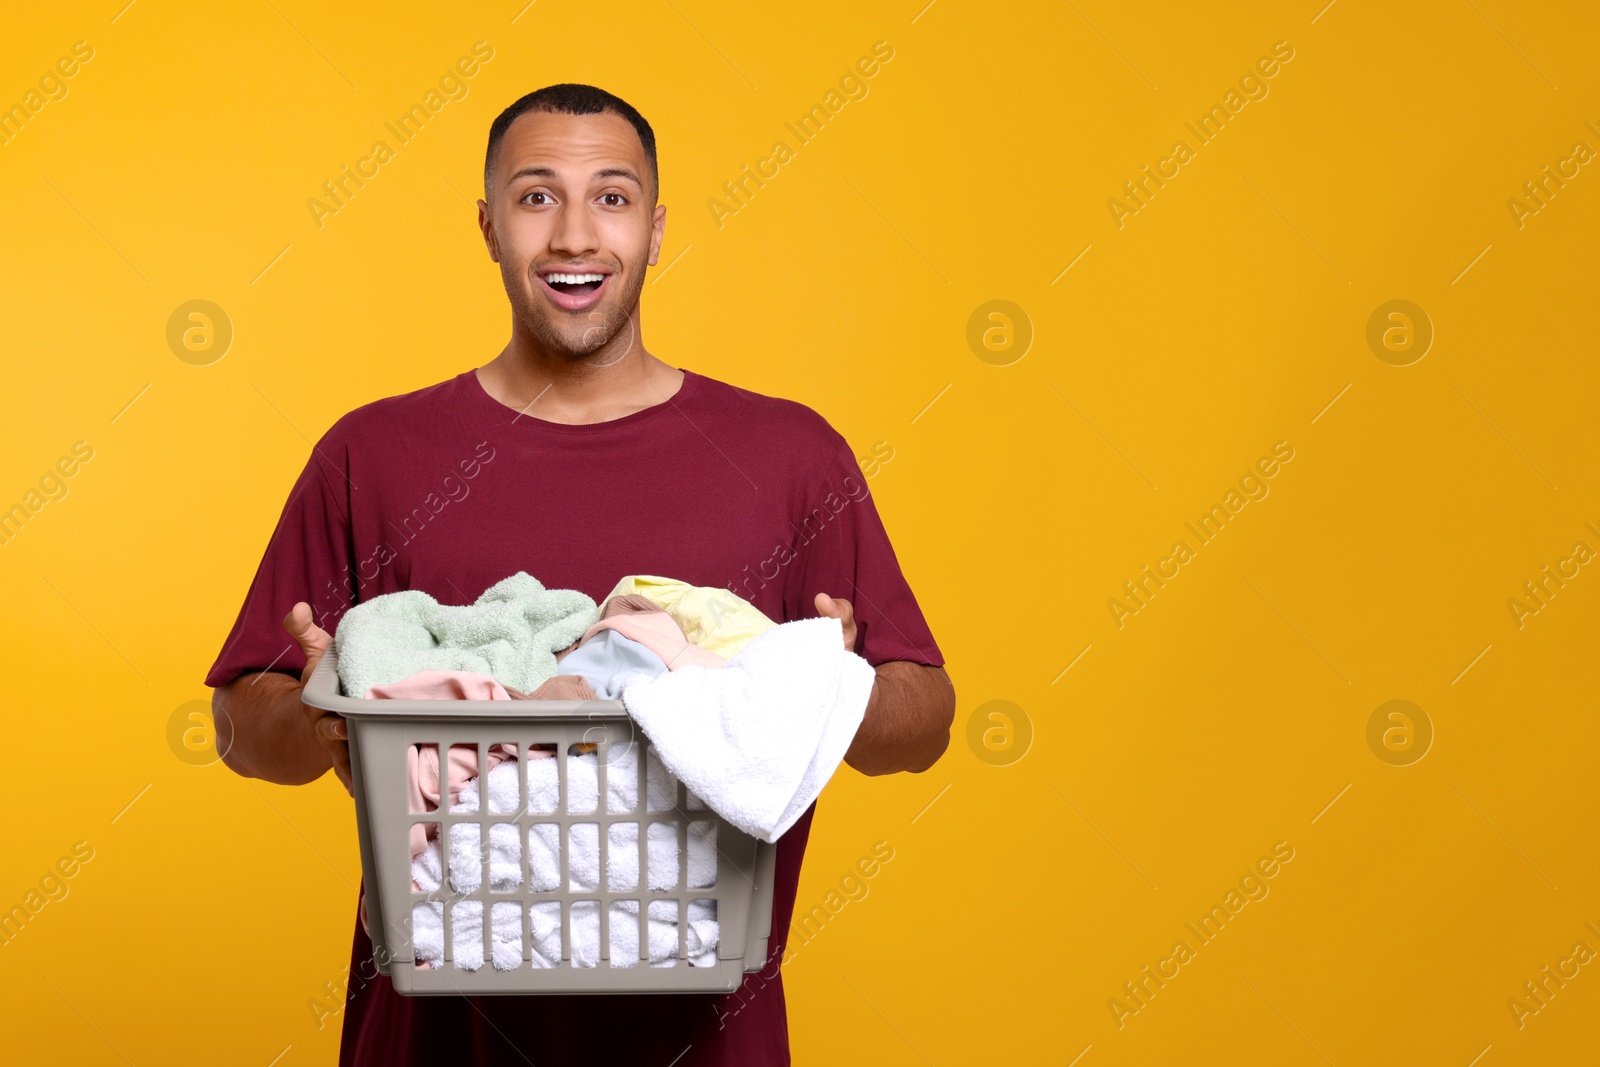 Photo of Emotional man with basket full of laundry on orange background